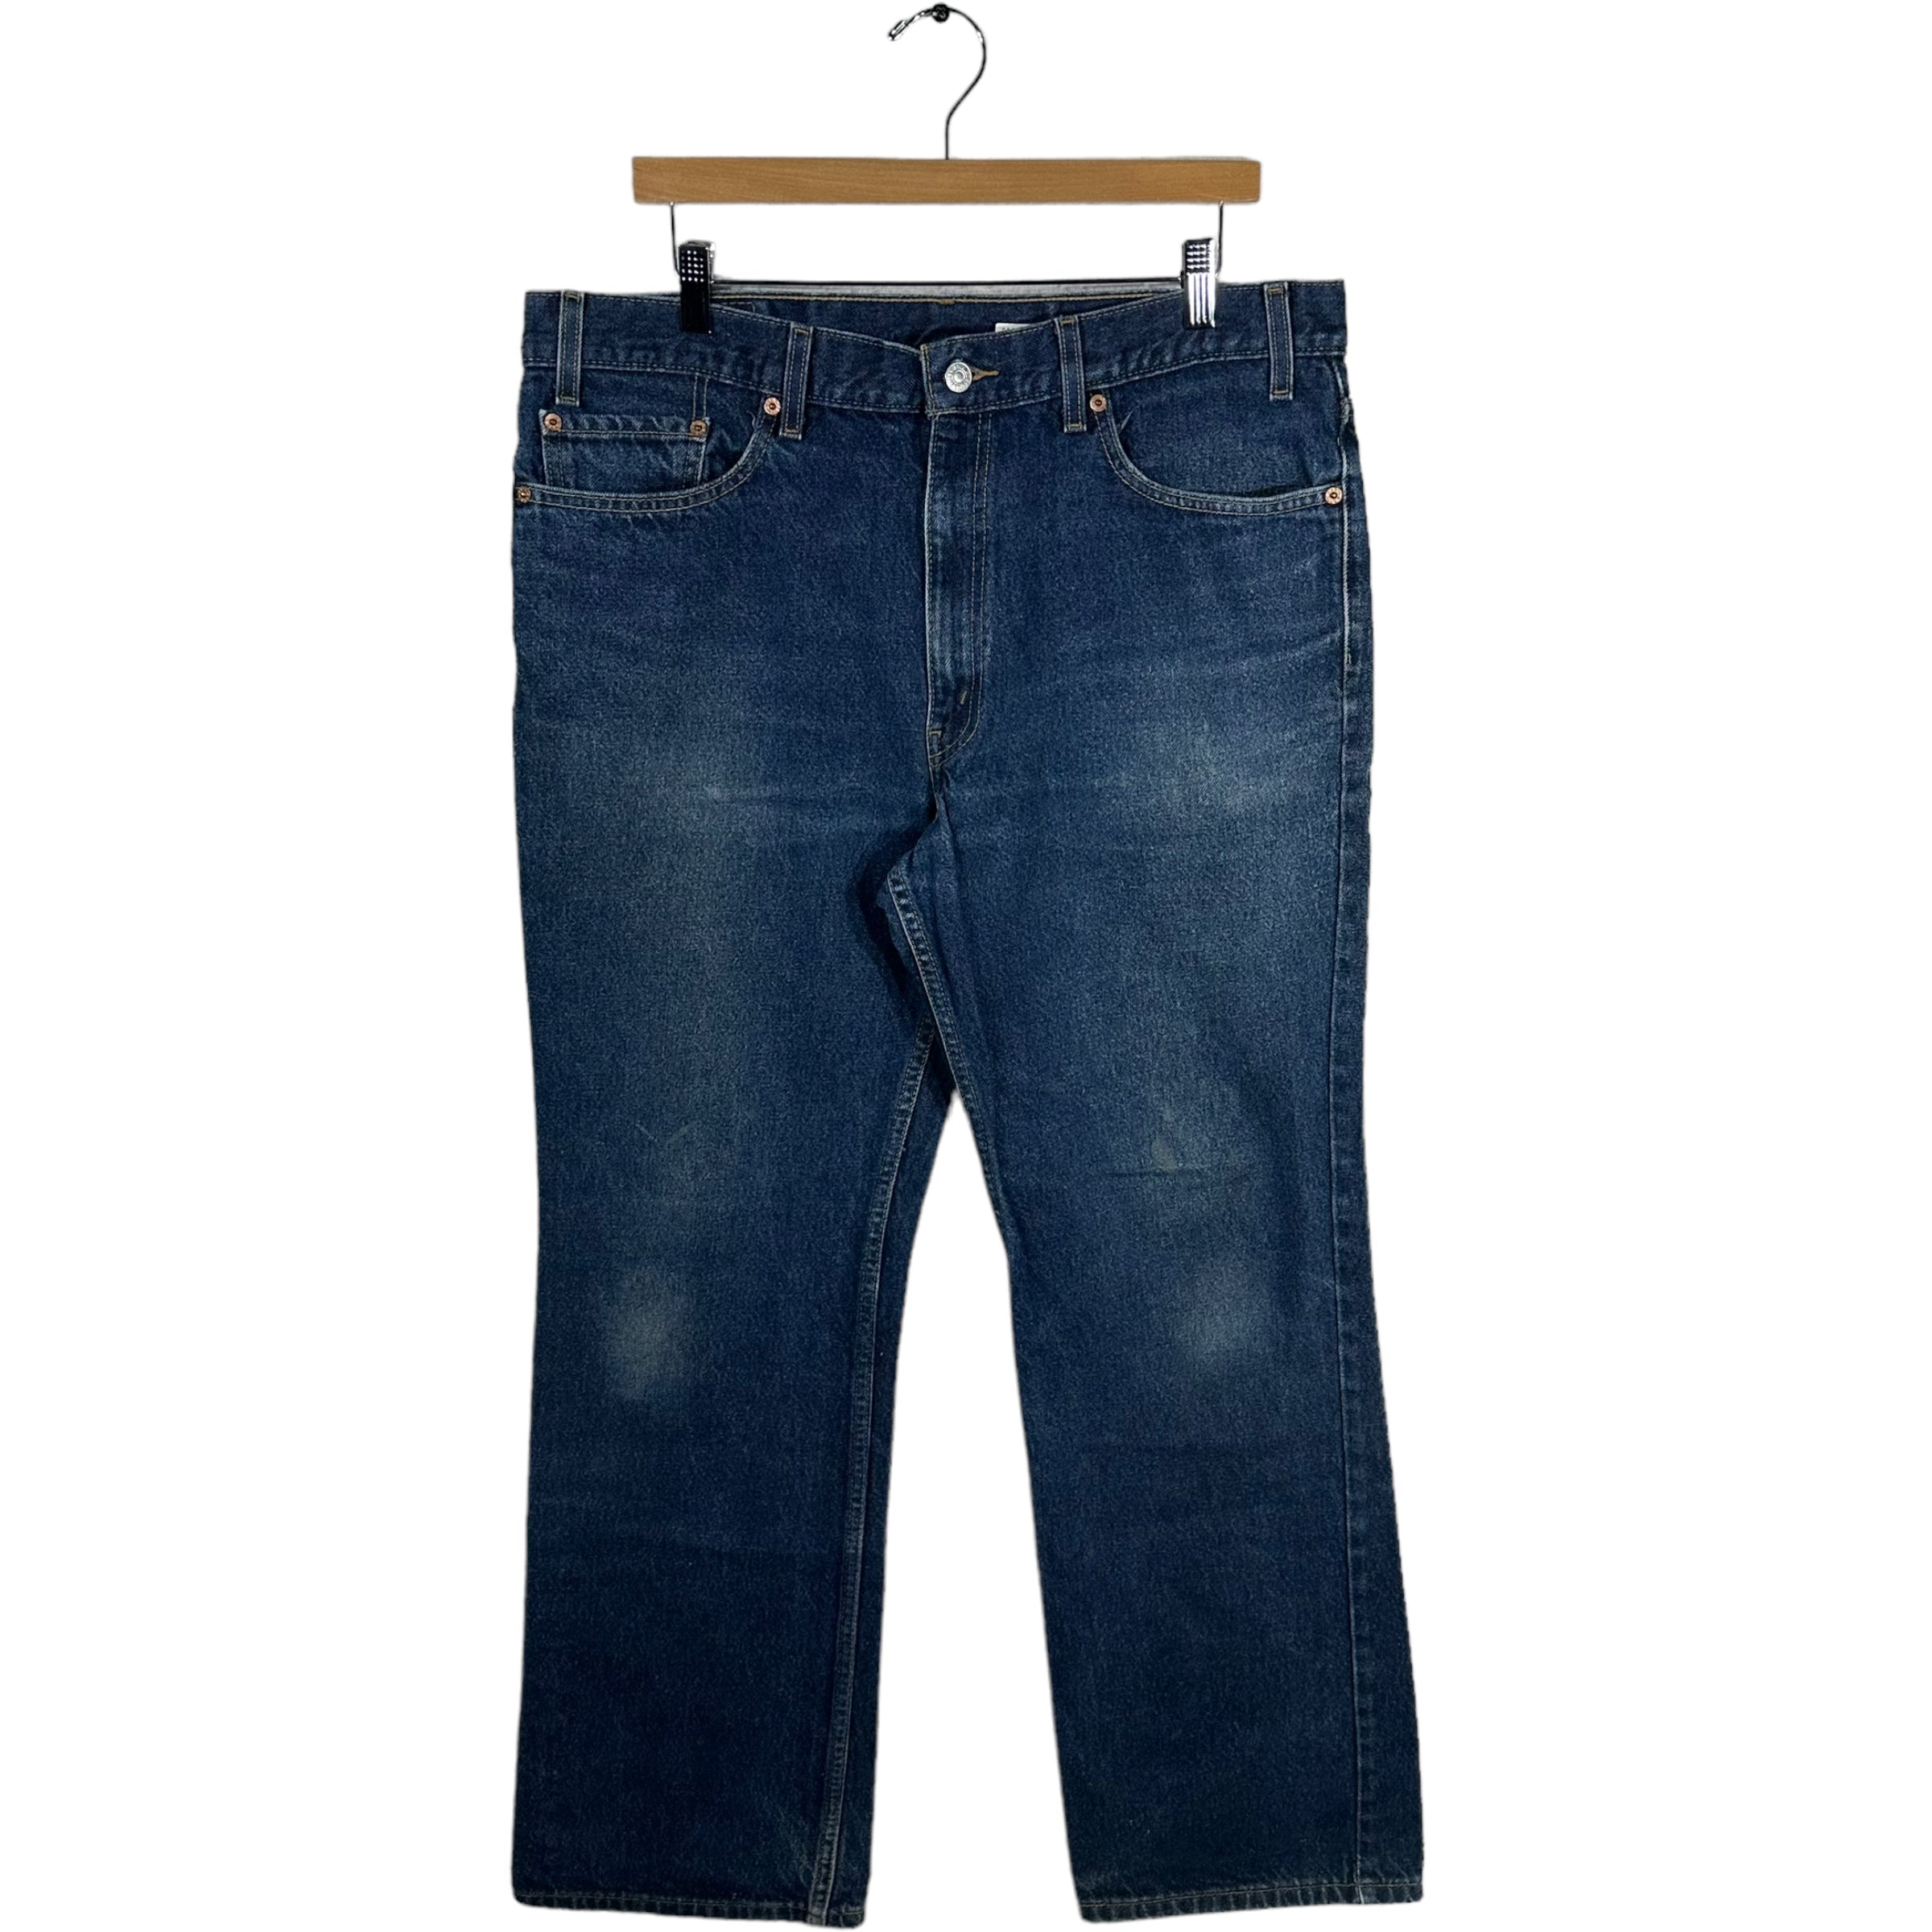 Vintage Levis 517 Denim Jeans